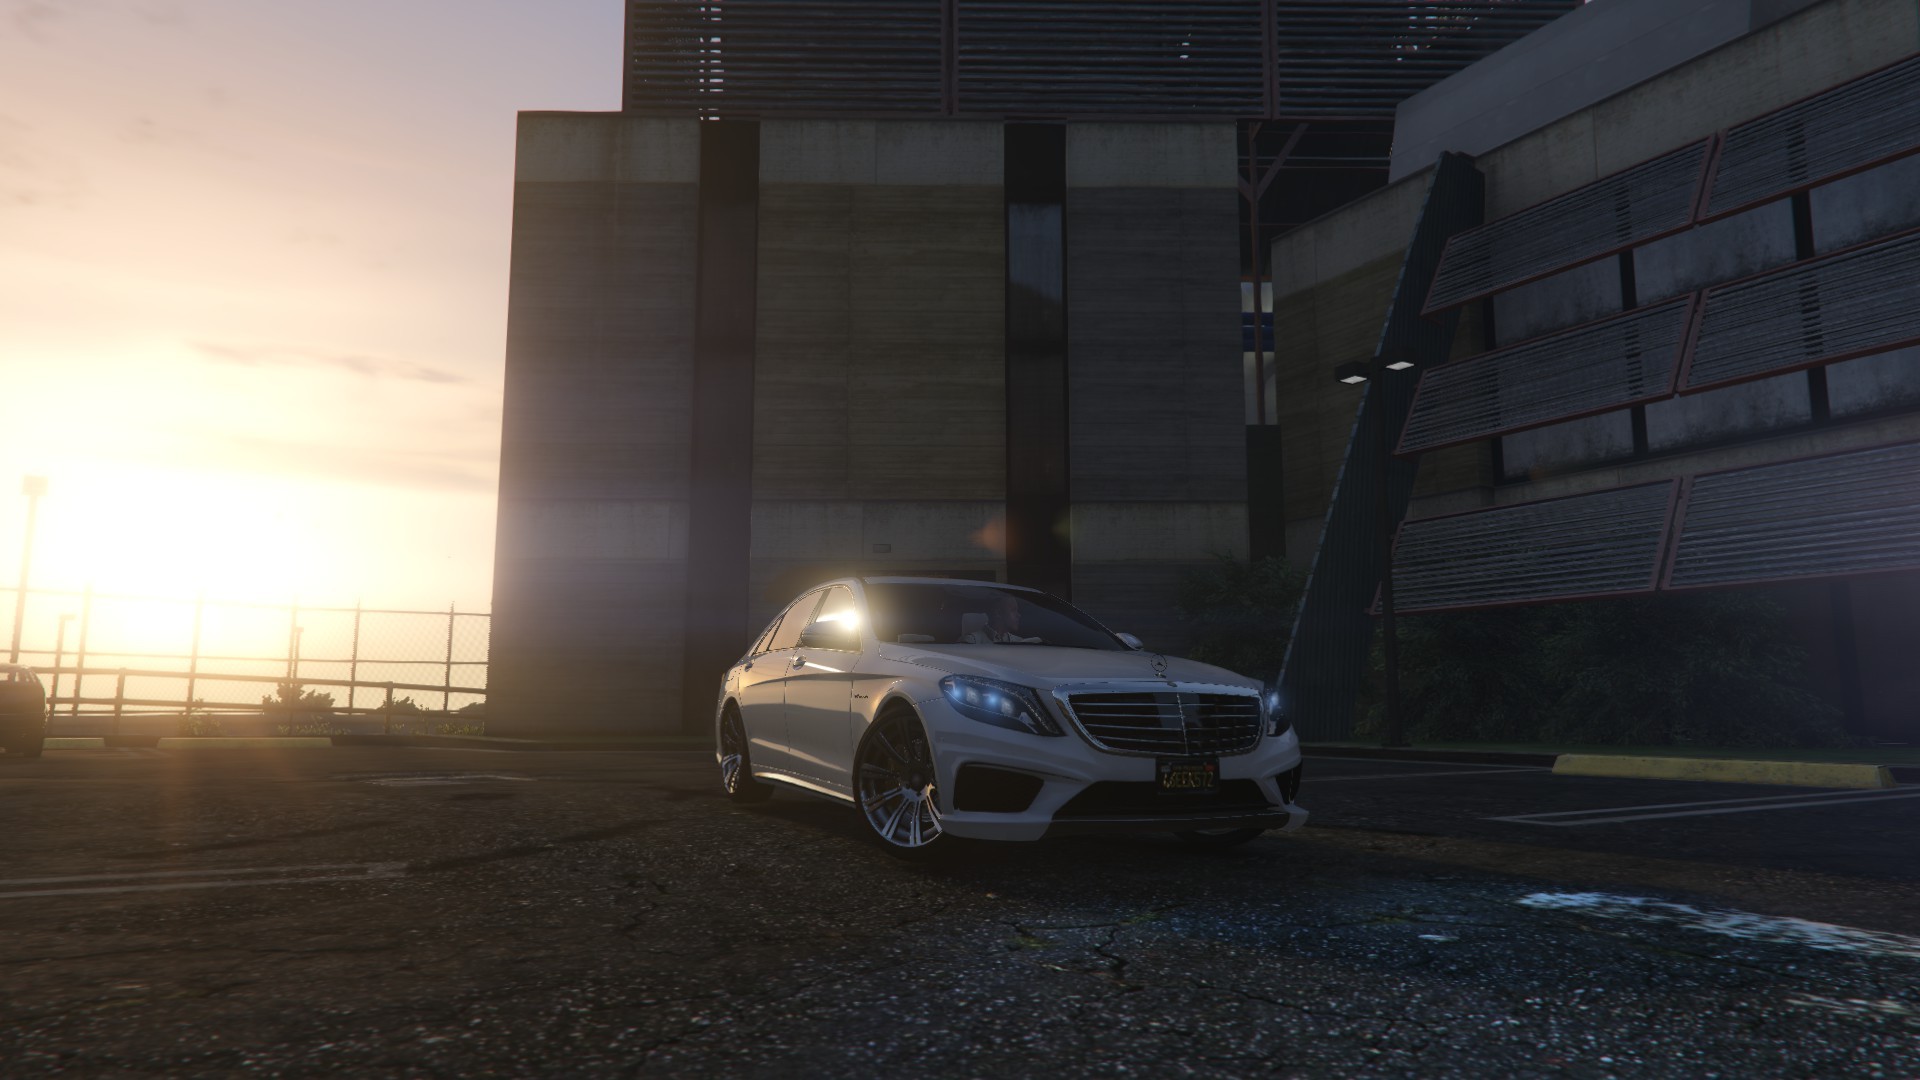 General 1920x1080 Grand Theft Auto V sunlight Mercedes-Benz video games car Rockstar Games